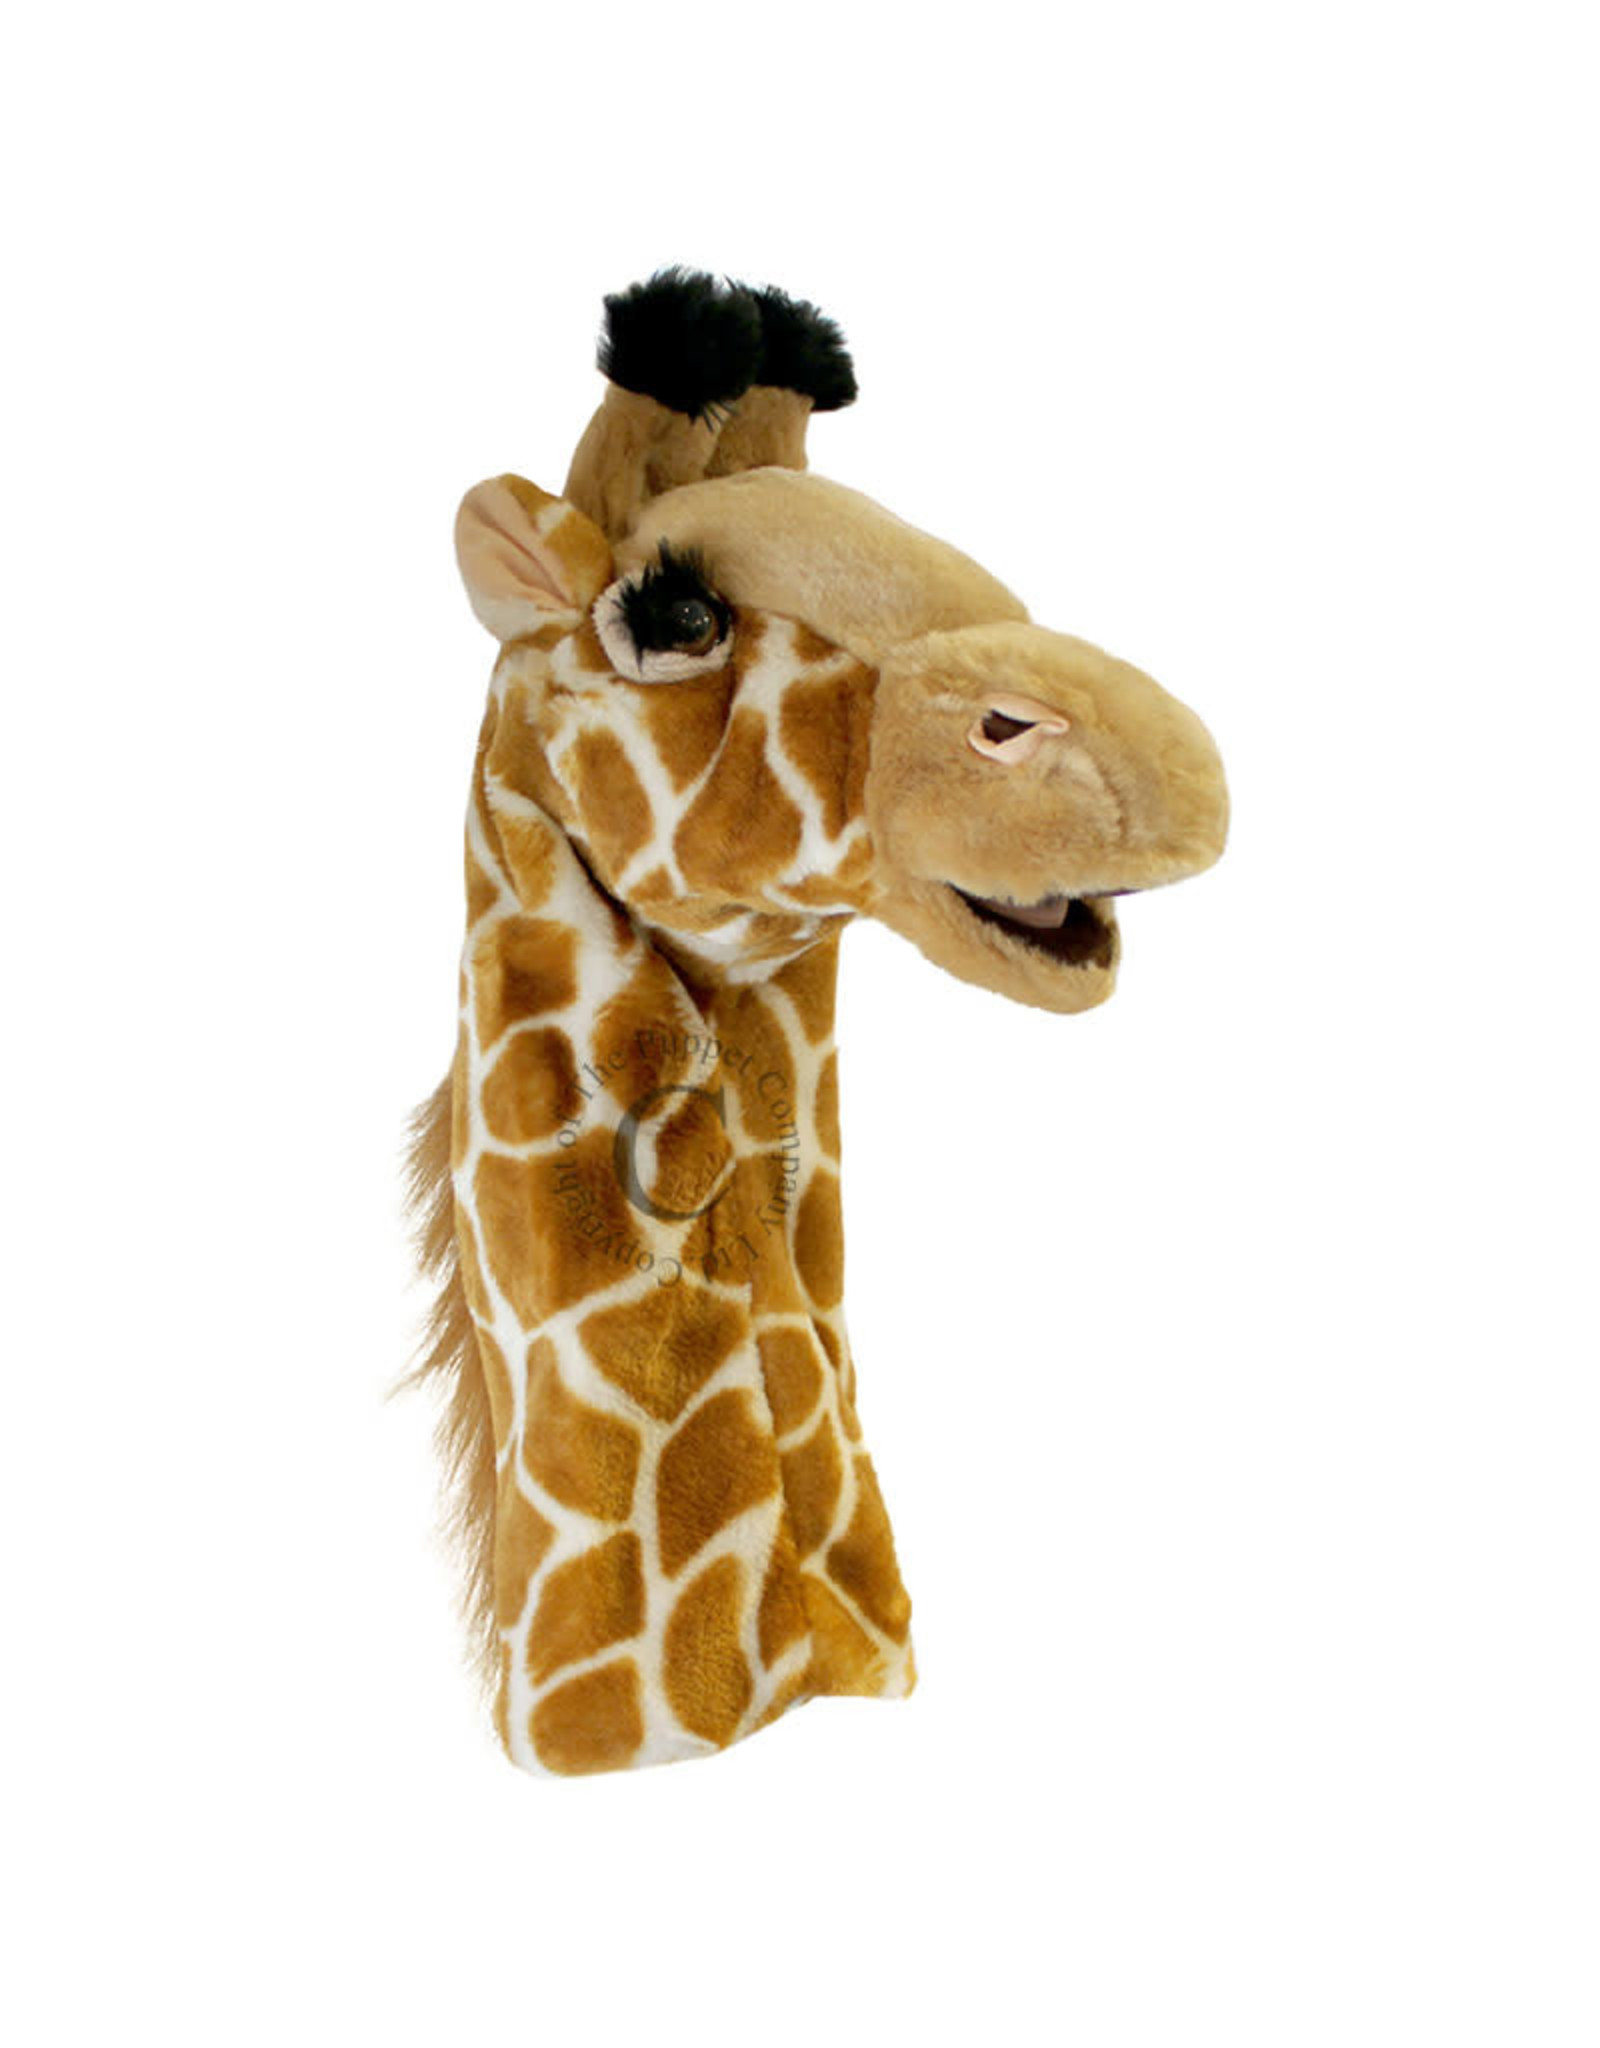 18" Long-Sleeved Glove Puppets: Giraffe